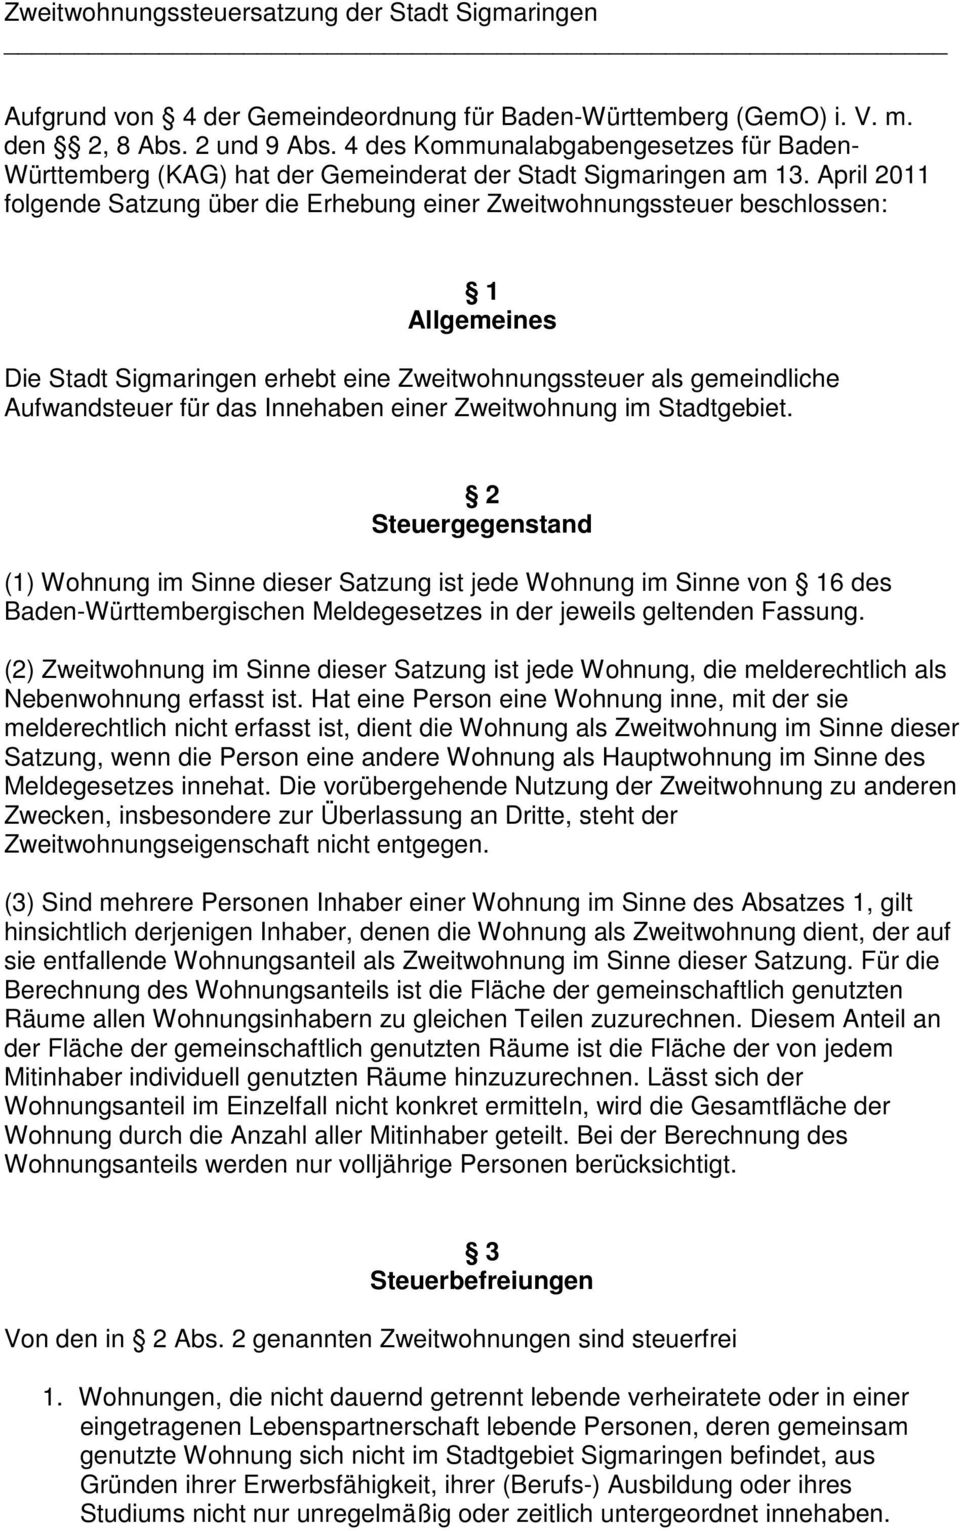 April 2011 folgende Satzung über die Erhebung einer Zweitwohnungssteuer beschlossen: 1 Allgemeines Die Stadt Sigmaringen erhebt eine Zweitwohnungssteuer als gemeindliche Aufwandsteuer für das